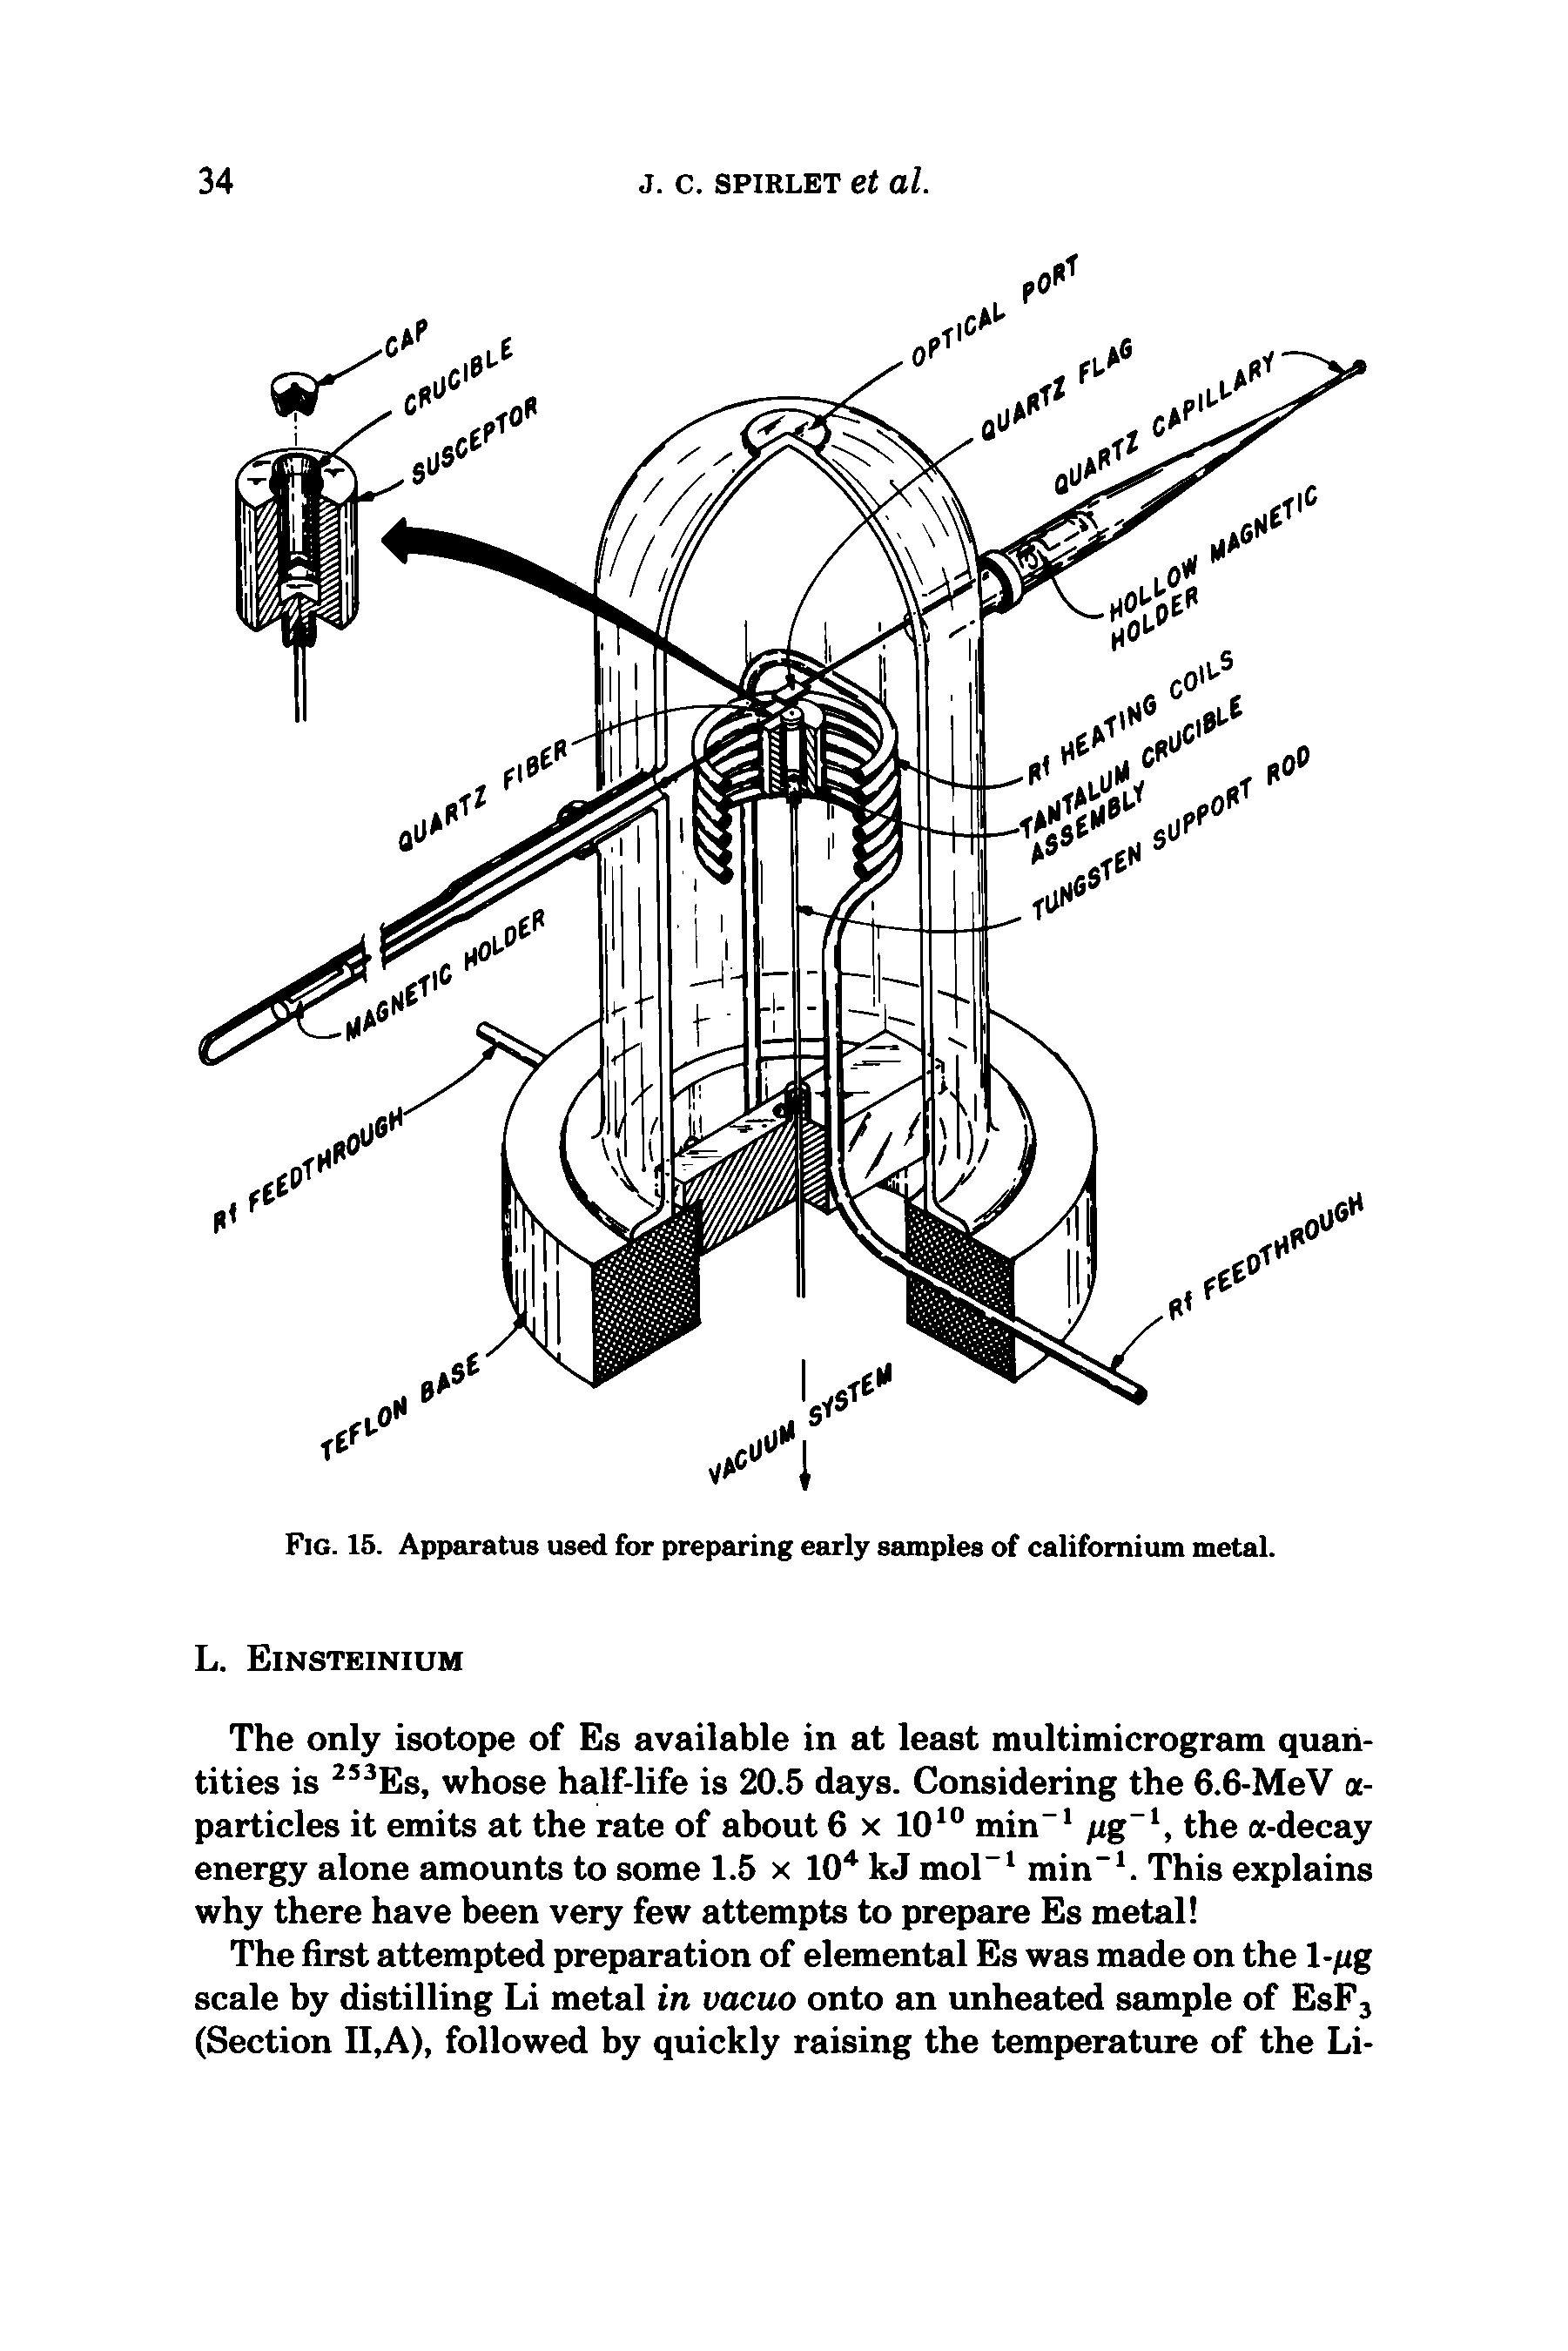 Fig. 15. Apparatus used for preparing early samples of californium metal.